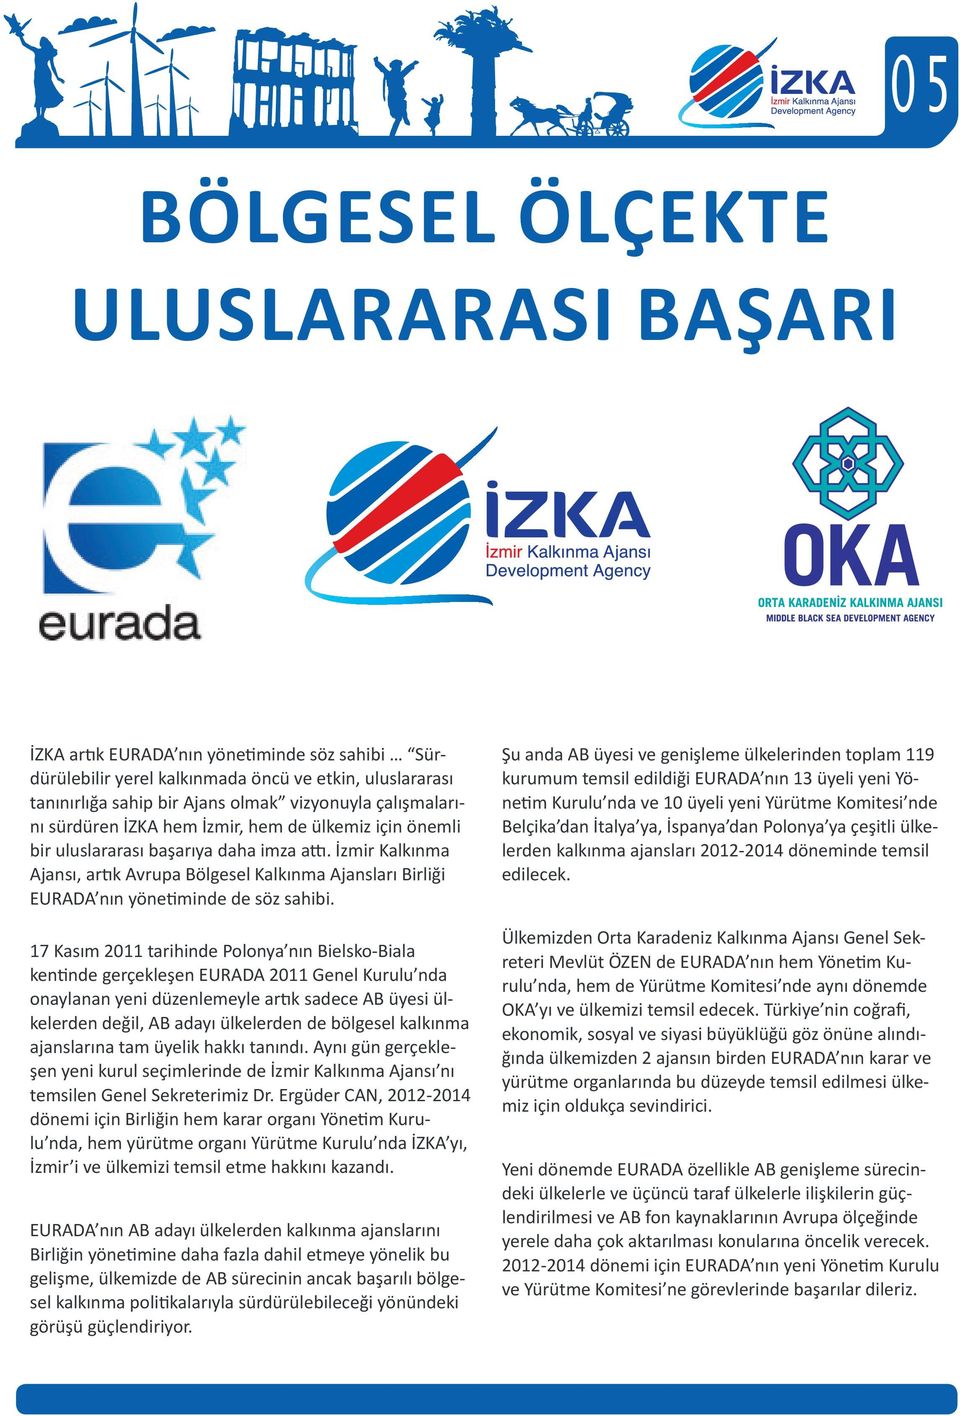 İzmir Kalkınma Ajansı, artık Avrupa Bölgesel Kalkınma Ajansları Birliği EURADA nın yönetiminde de söz sahibi.